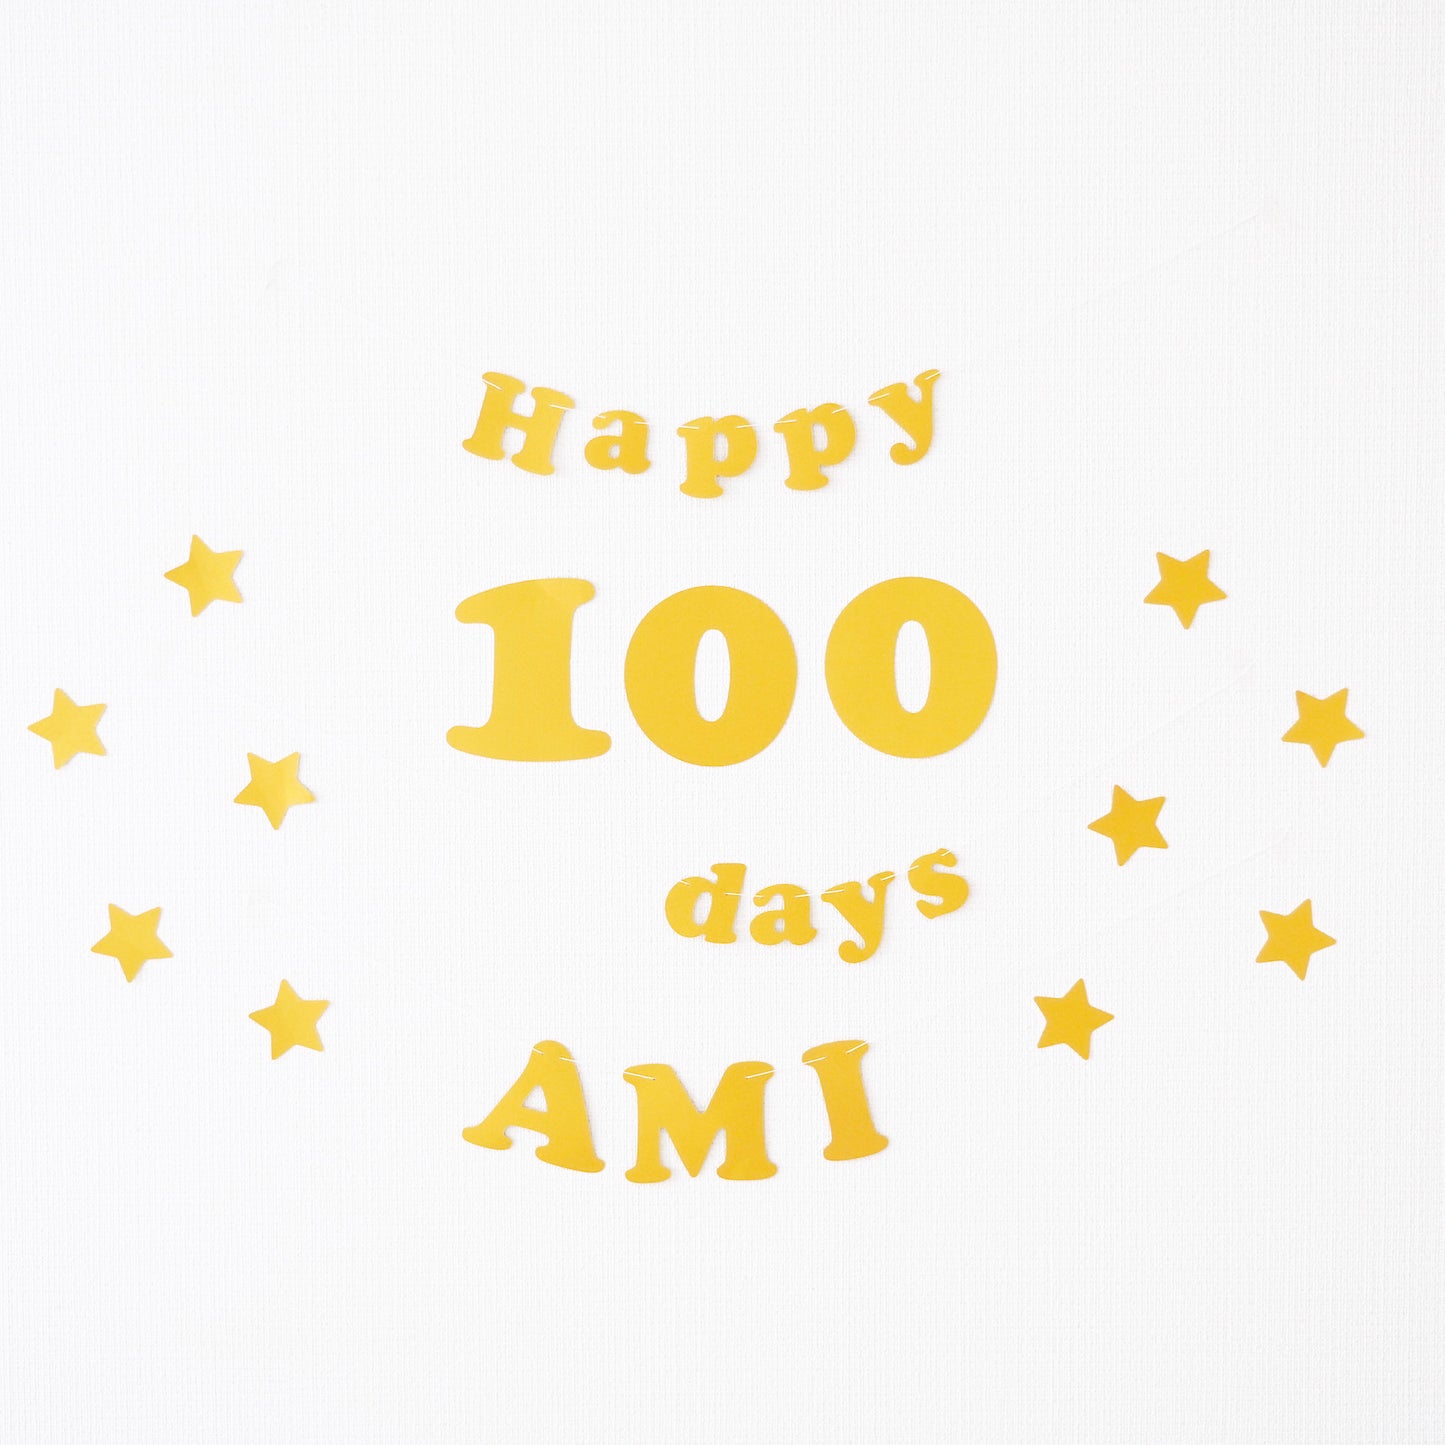 100日祝い用ガーランドセット（お名前付き・丸文字）